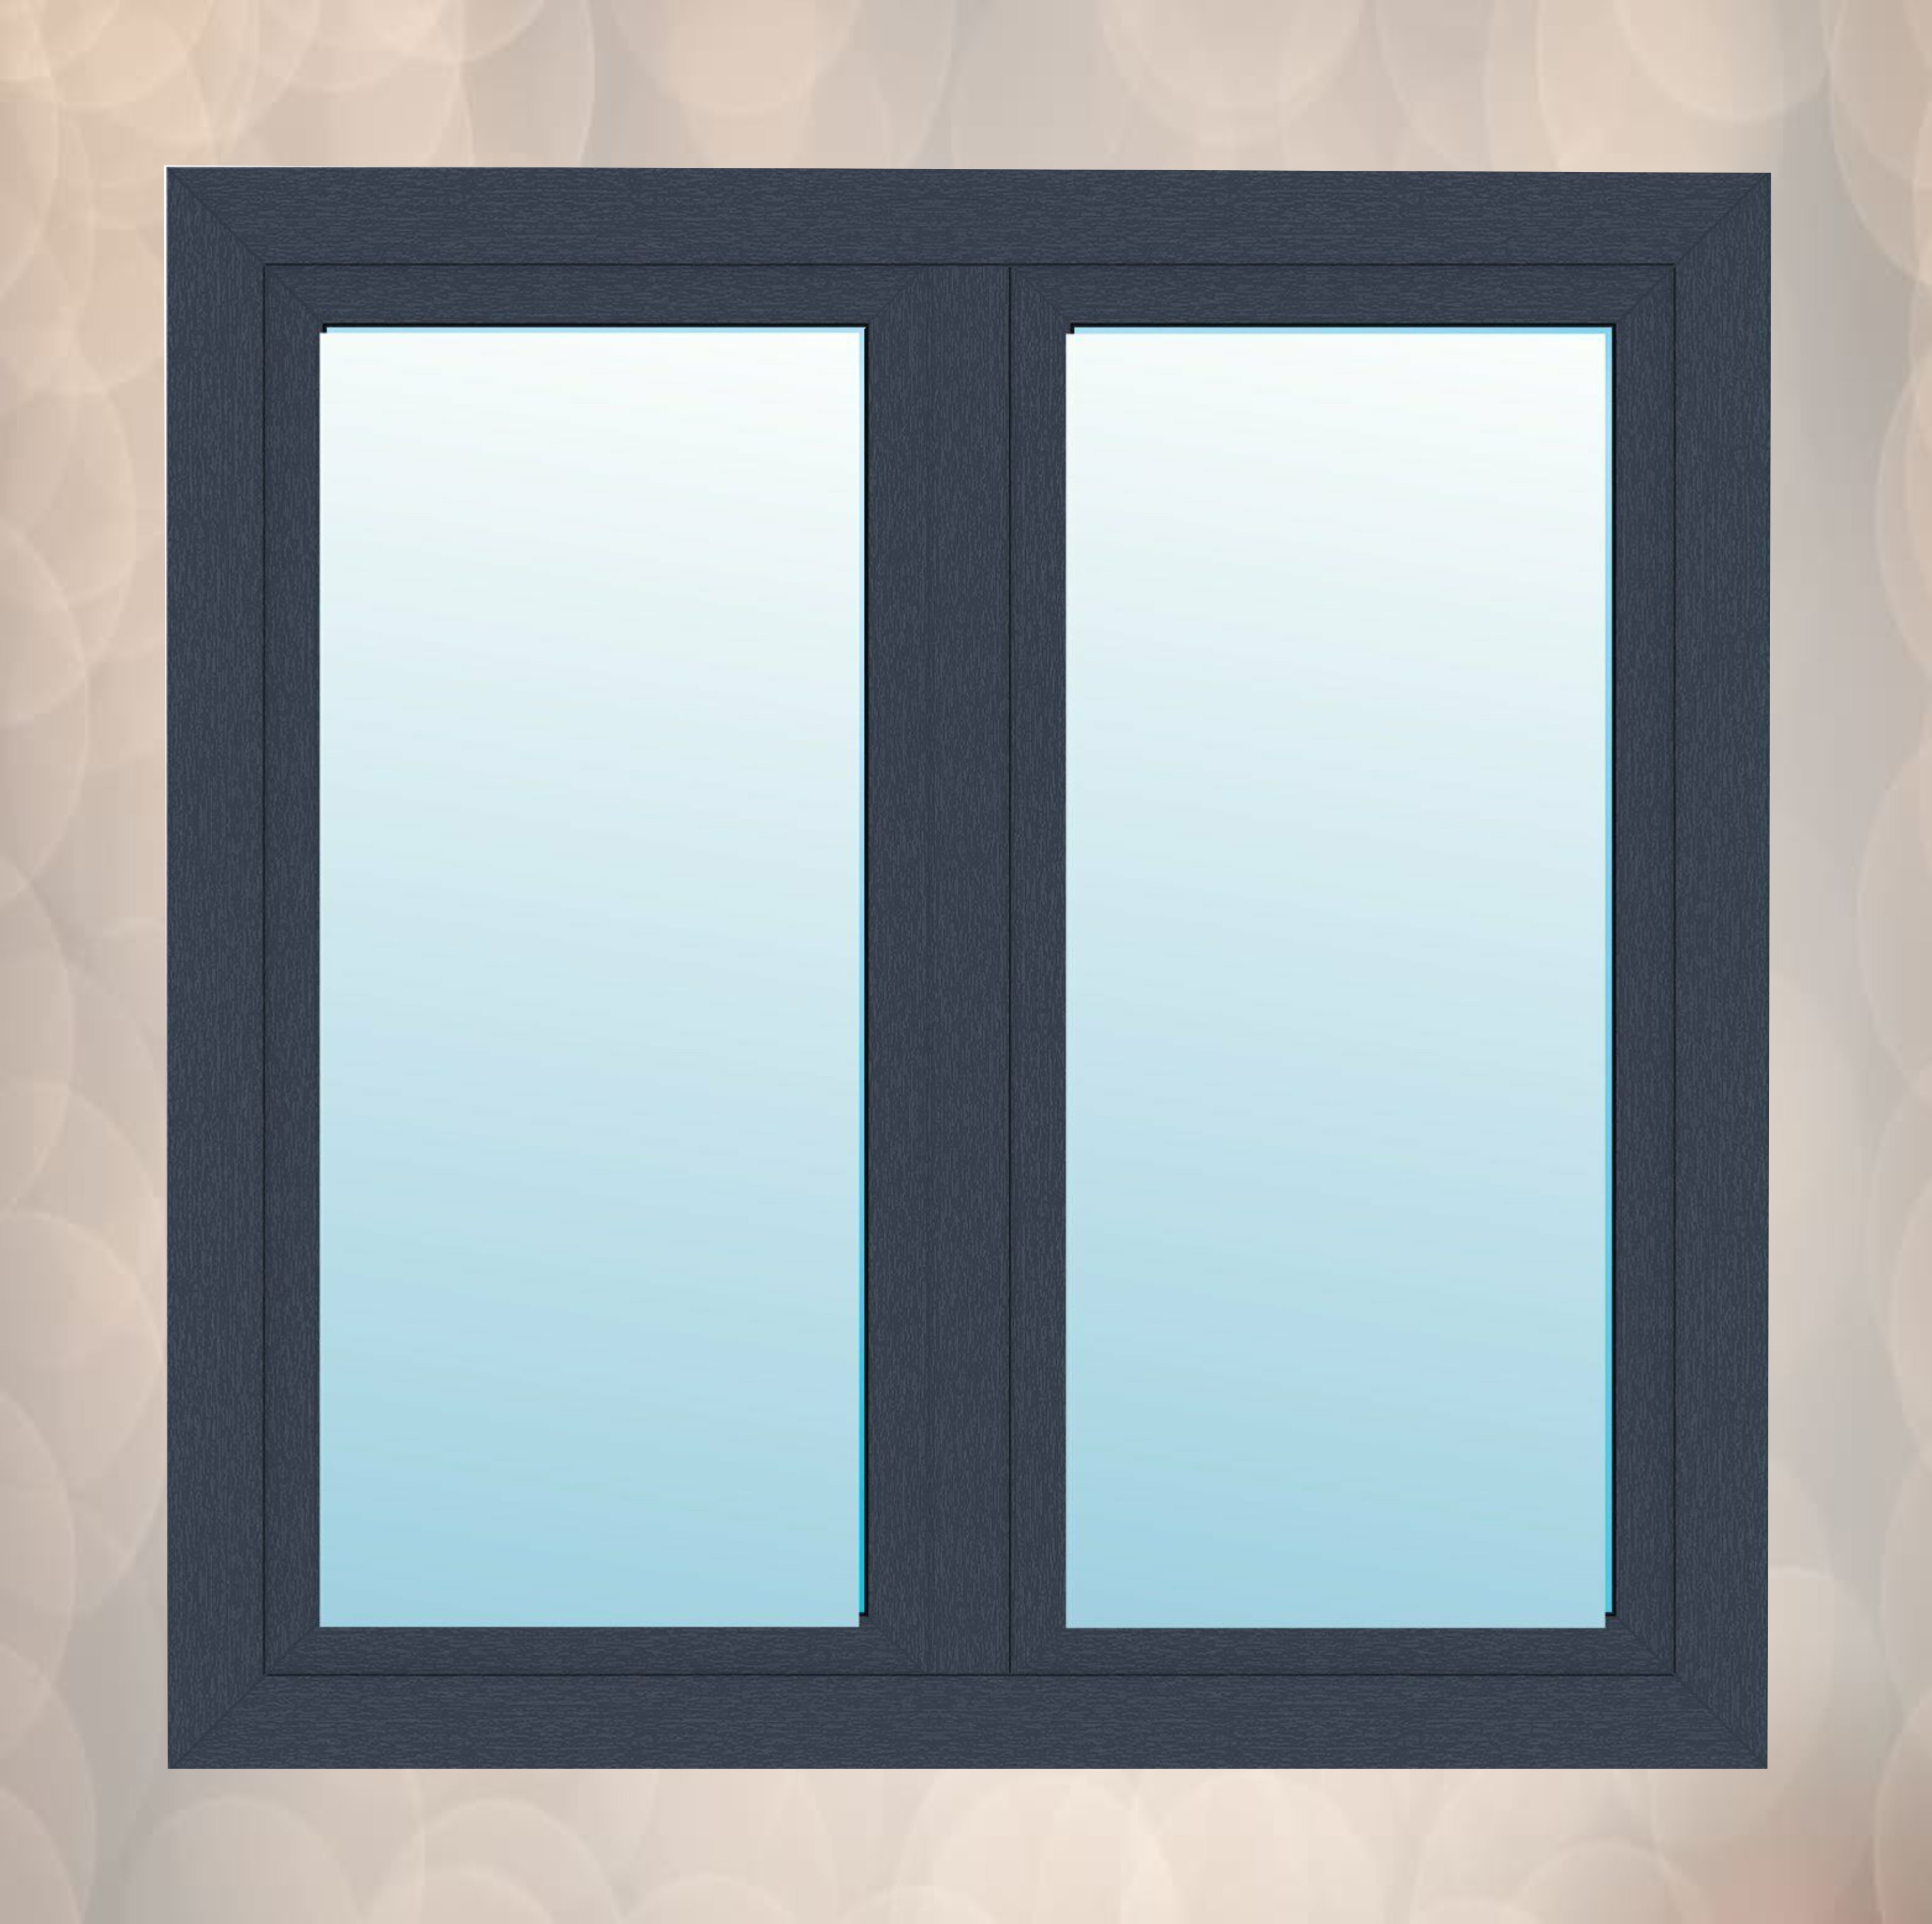 Fenster mit Stulp Anthrazitgrau außen innen weiß 2 flügeliges Kunststofffenster